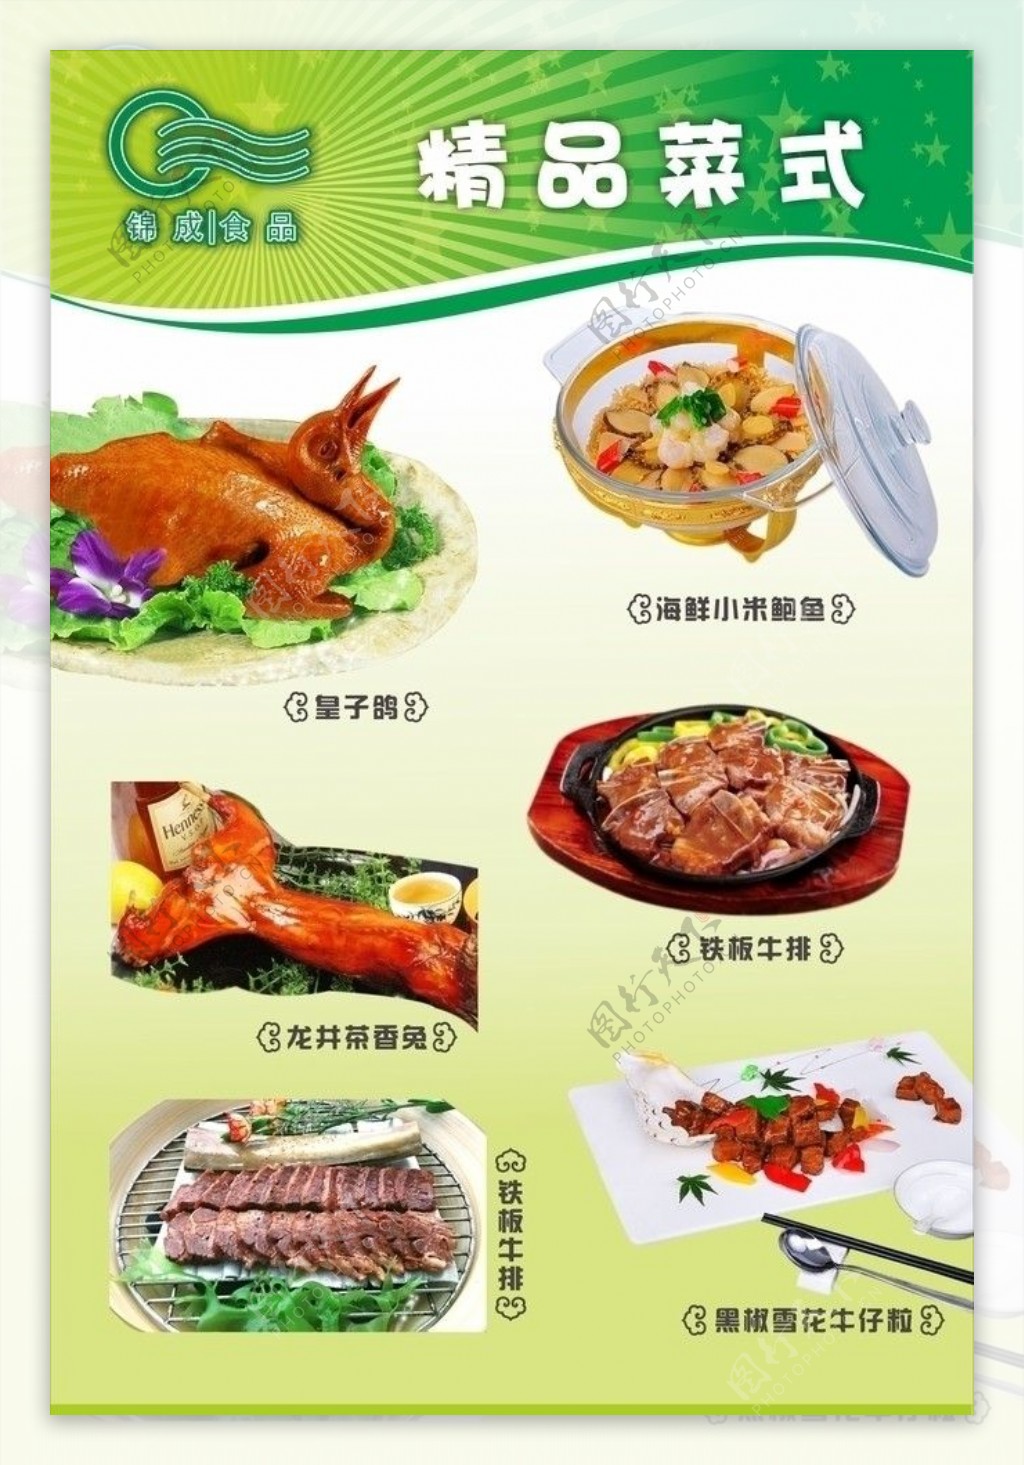 锦成食品菜品海报